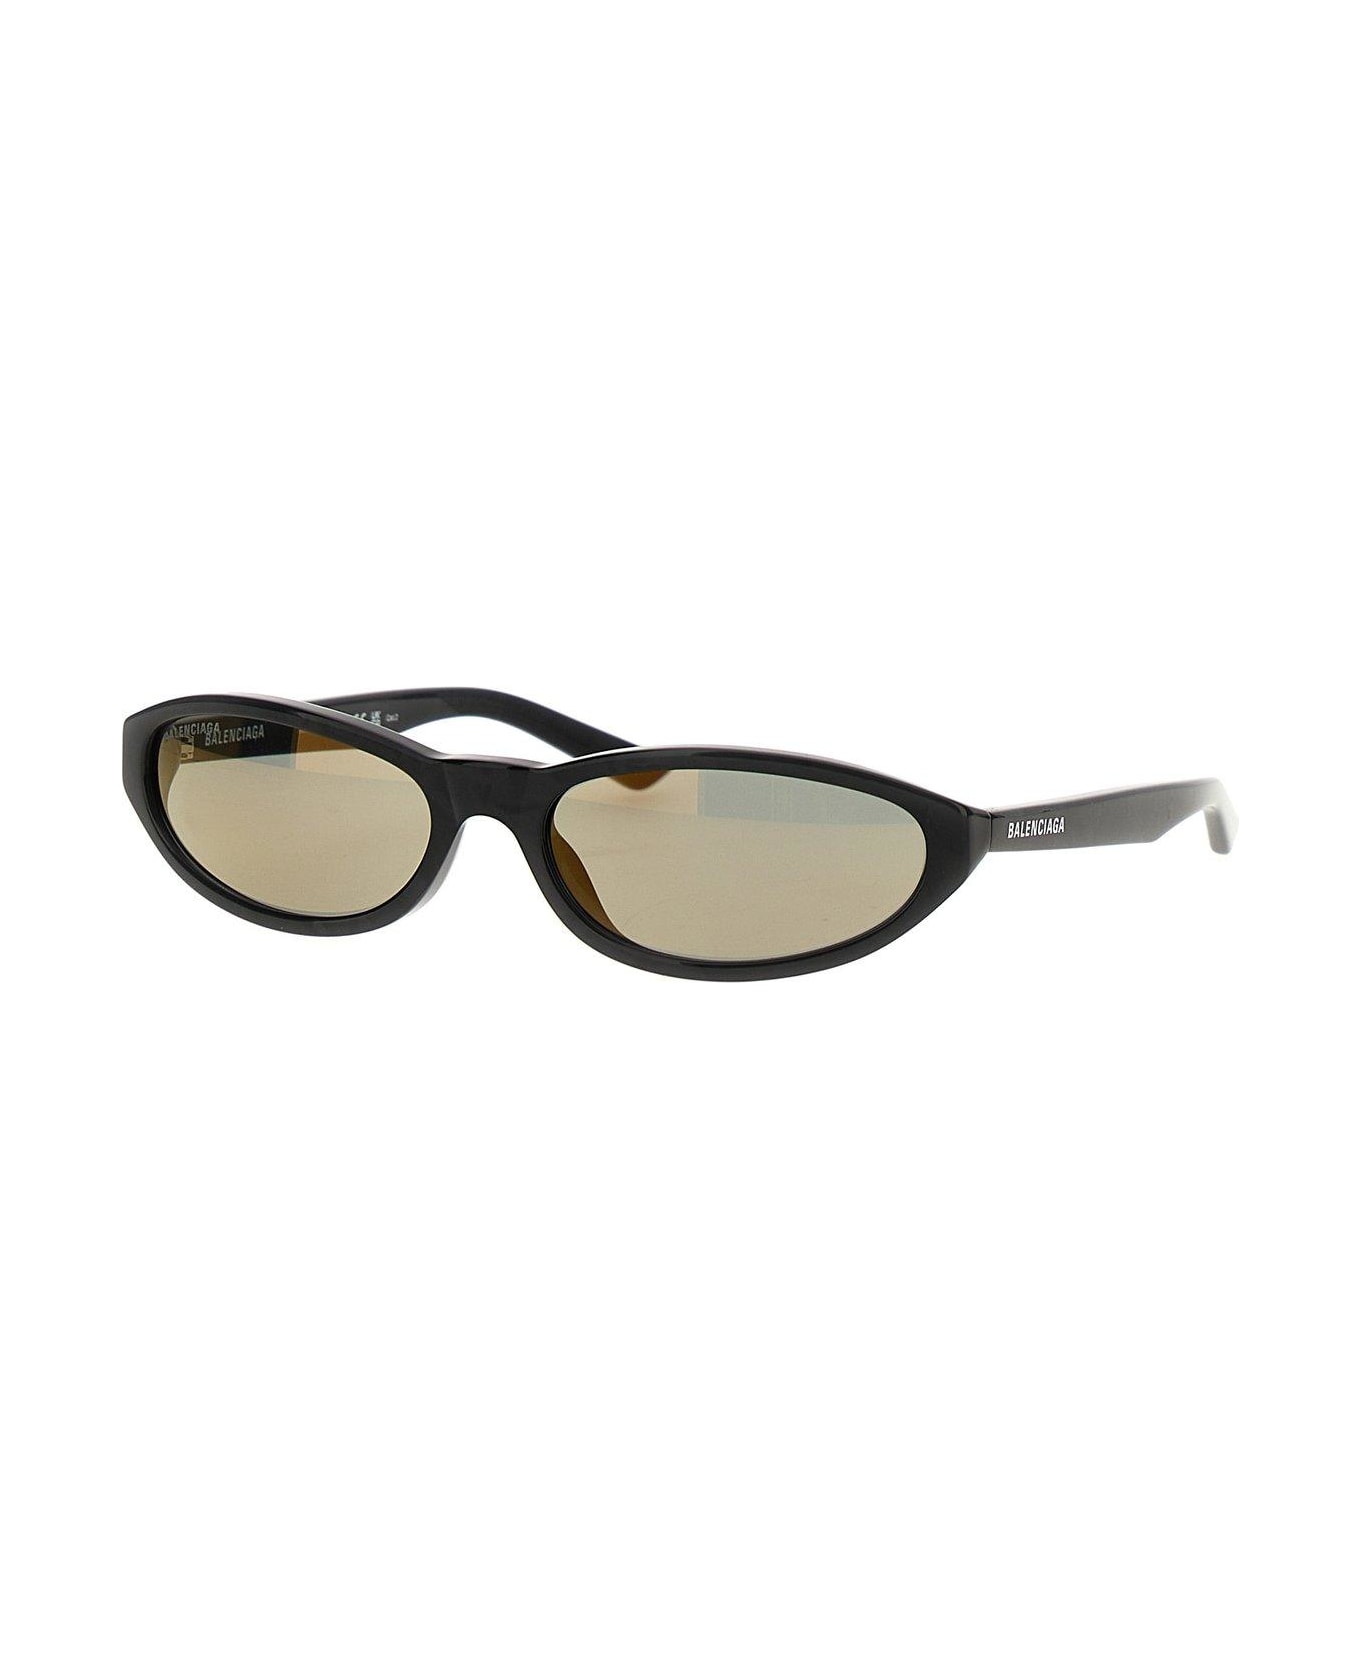 Balenciaga Neo Round Sunglasses - Black Pearl/mirr